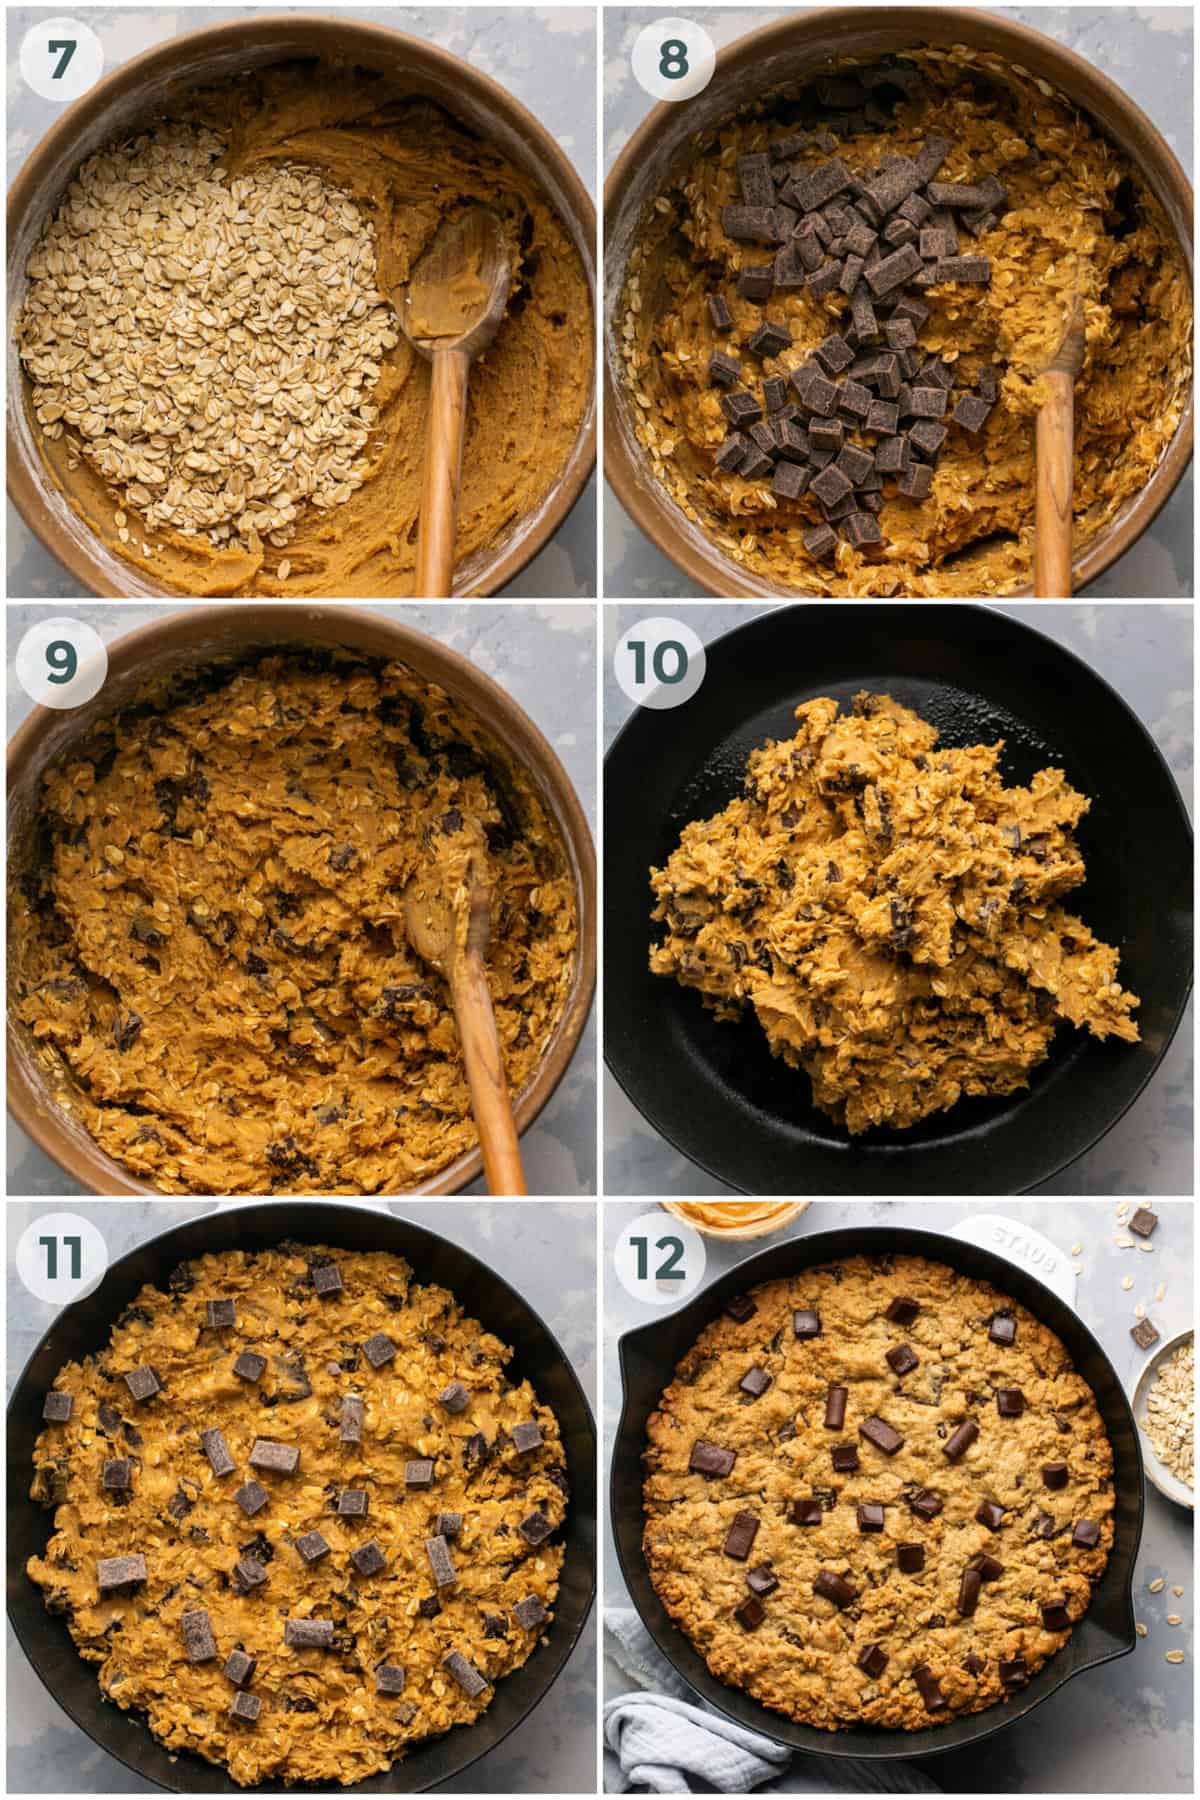 steps 7-12 of preparing skillet cookie recipe